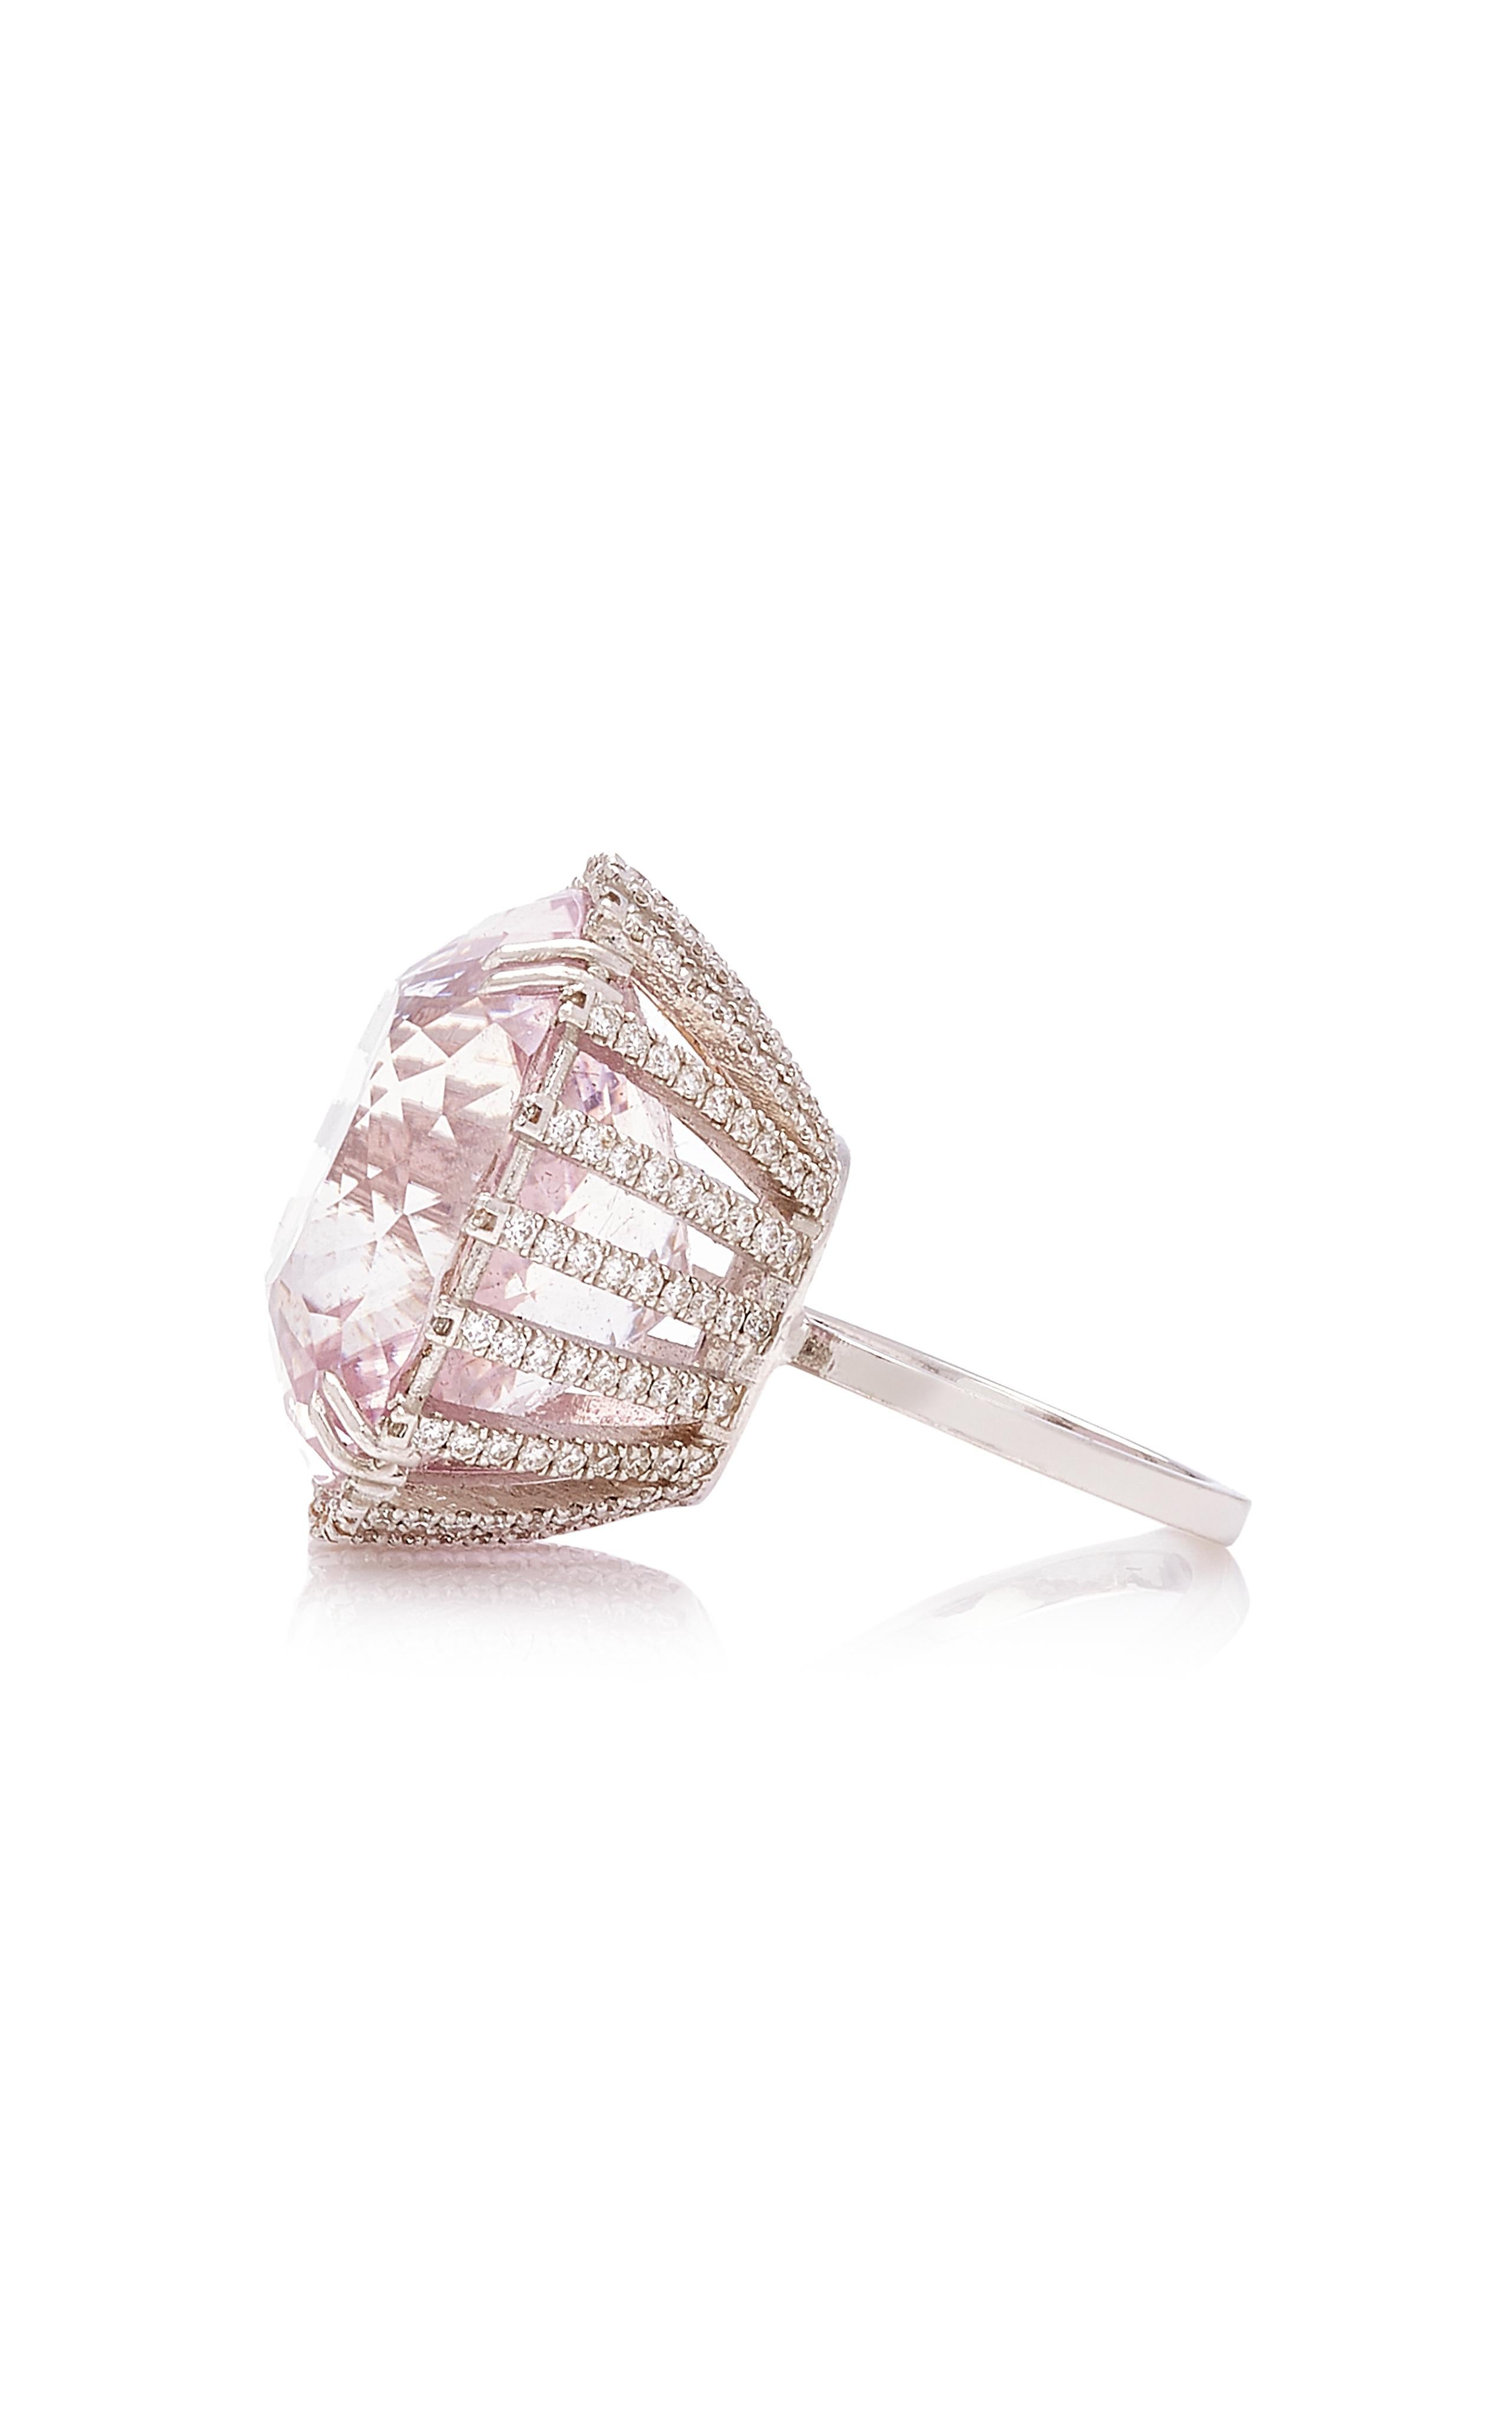 Funkelnder Pinker Kunzit & Weiße Diamanten Ring
ist ein Kunzit mit Facettenschliff, der prismatische Lavendel- und Rosatöne ausstrahlt, 
präsentiert auf atemberaubenden diamantbesetzten Zacken mit einem Rahmen aus weißen Volldiamanten, die in 18